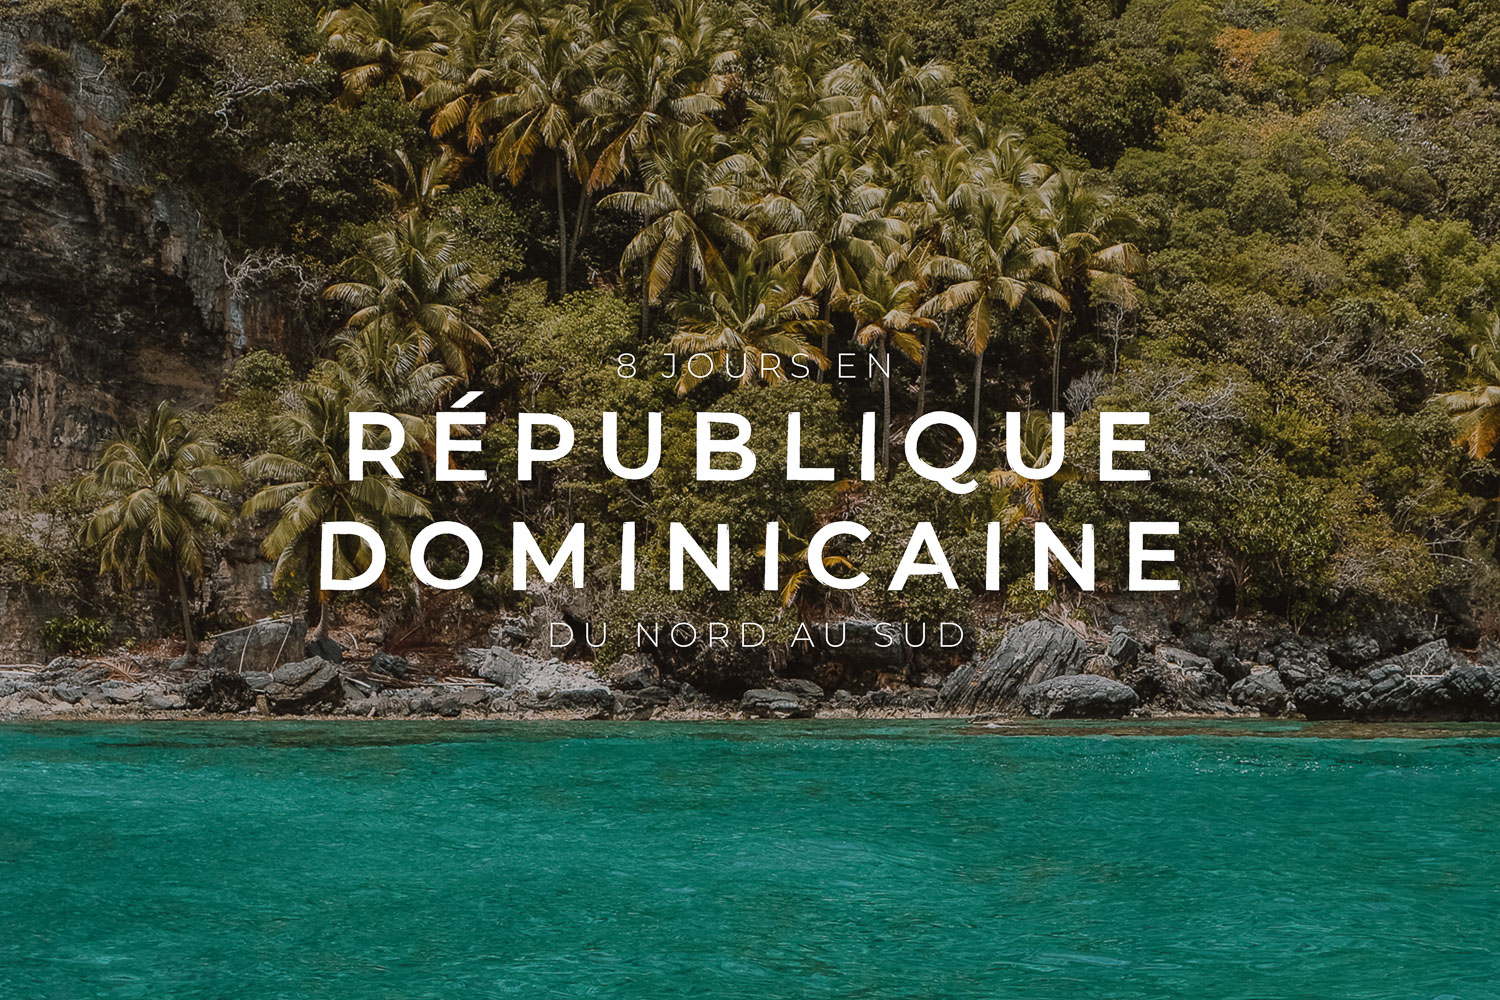 voyage republique dominicaine paiement en plusieurs fois